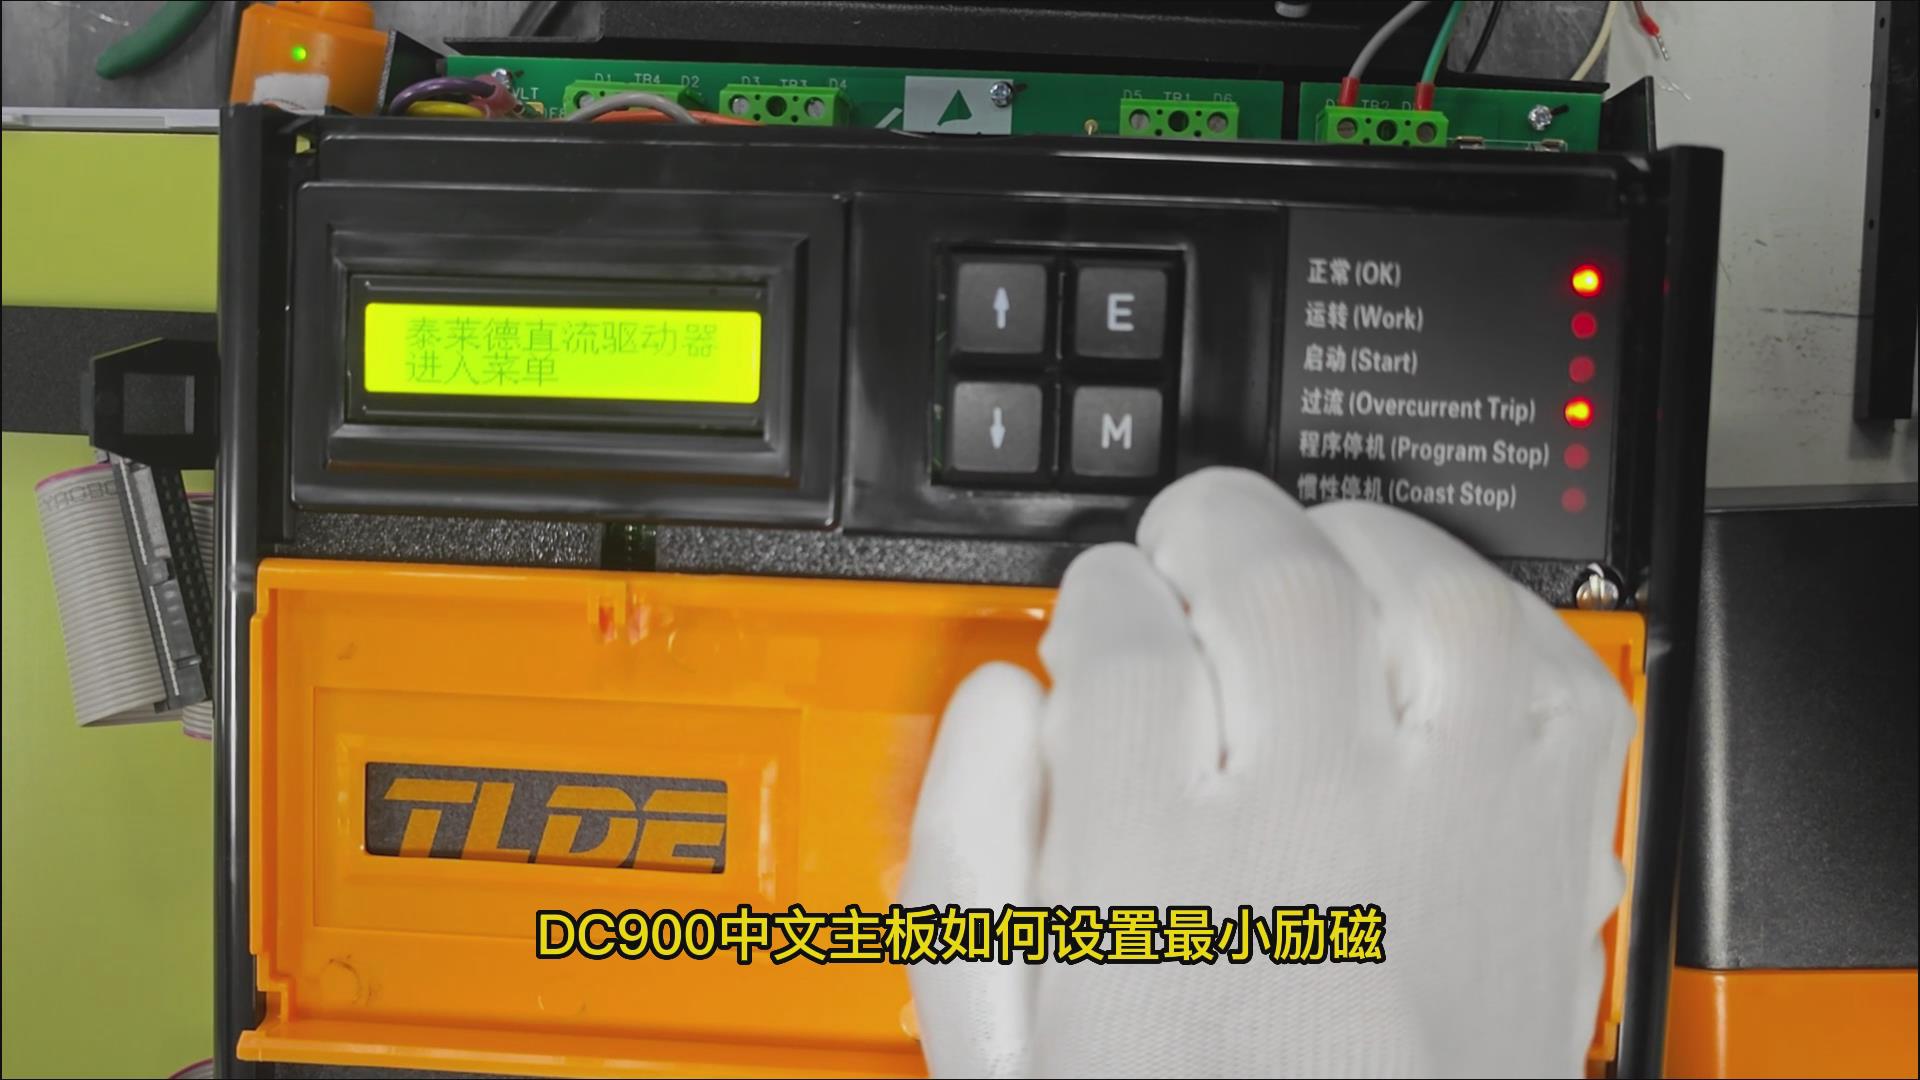 DC900C系列直流驱动器如何设置最小励磁电流？ 777钱柜机电！